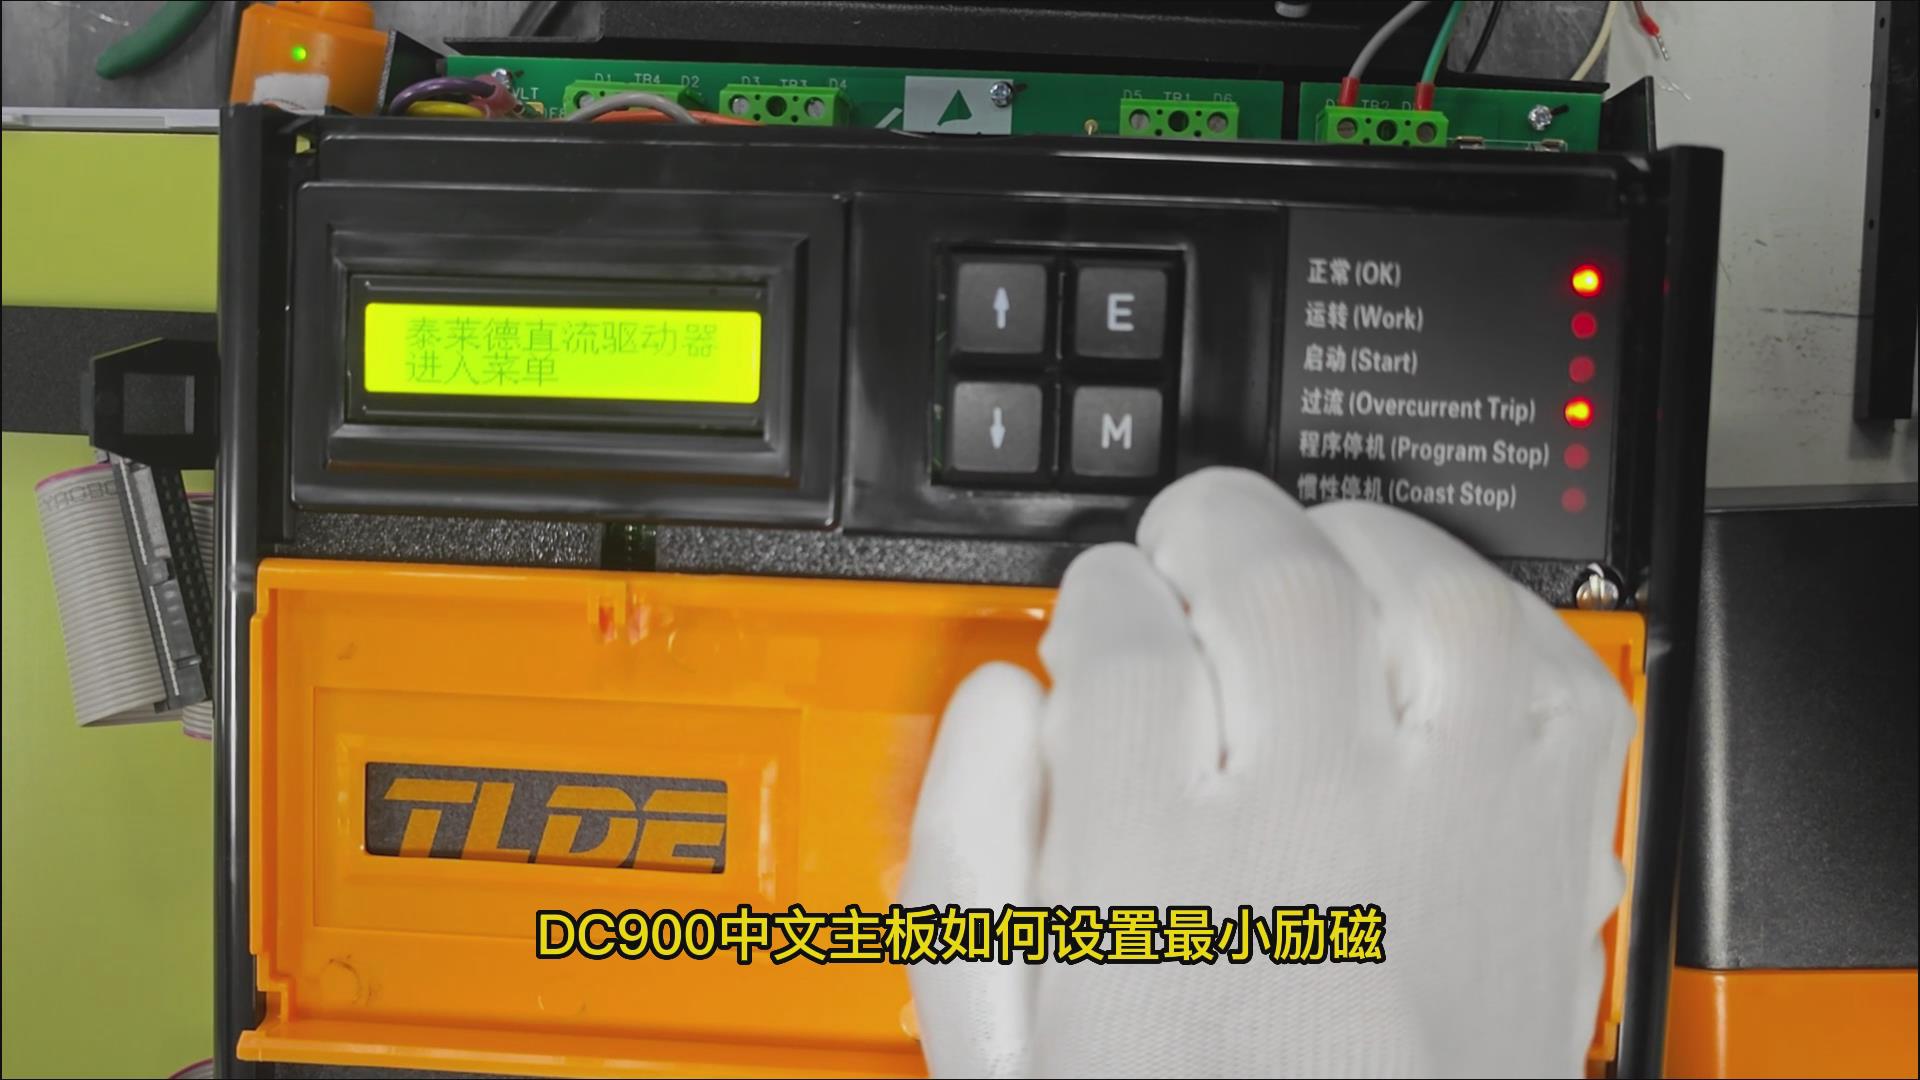 DC900C系列直流驱动器如何设置最小励磁电流？ 777钱柜机电！